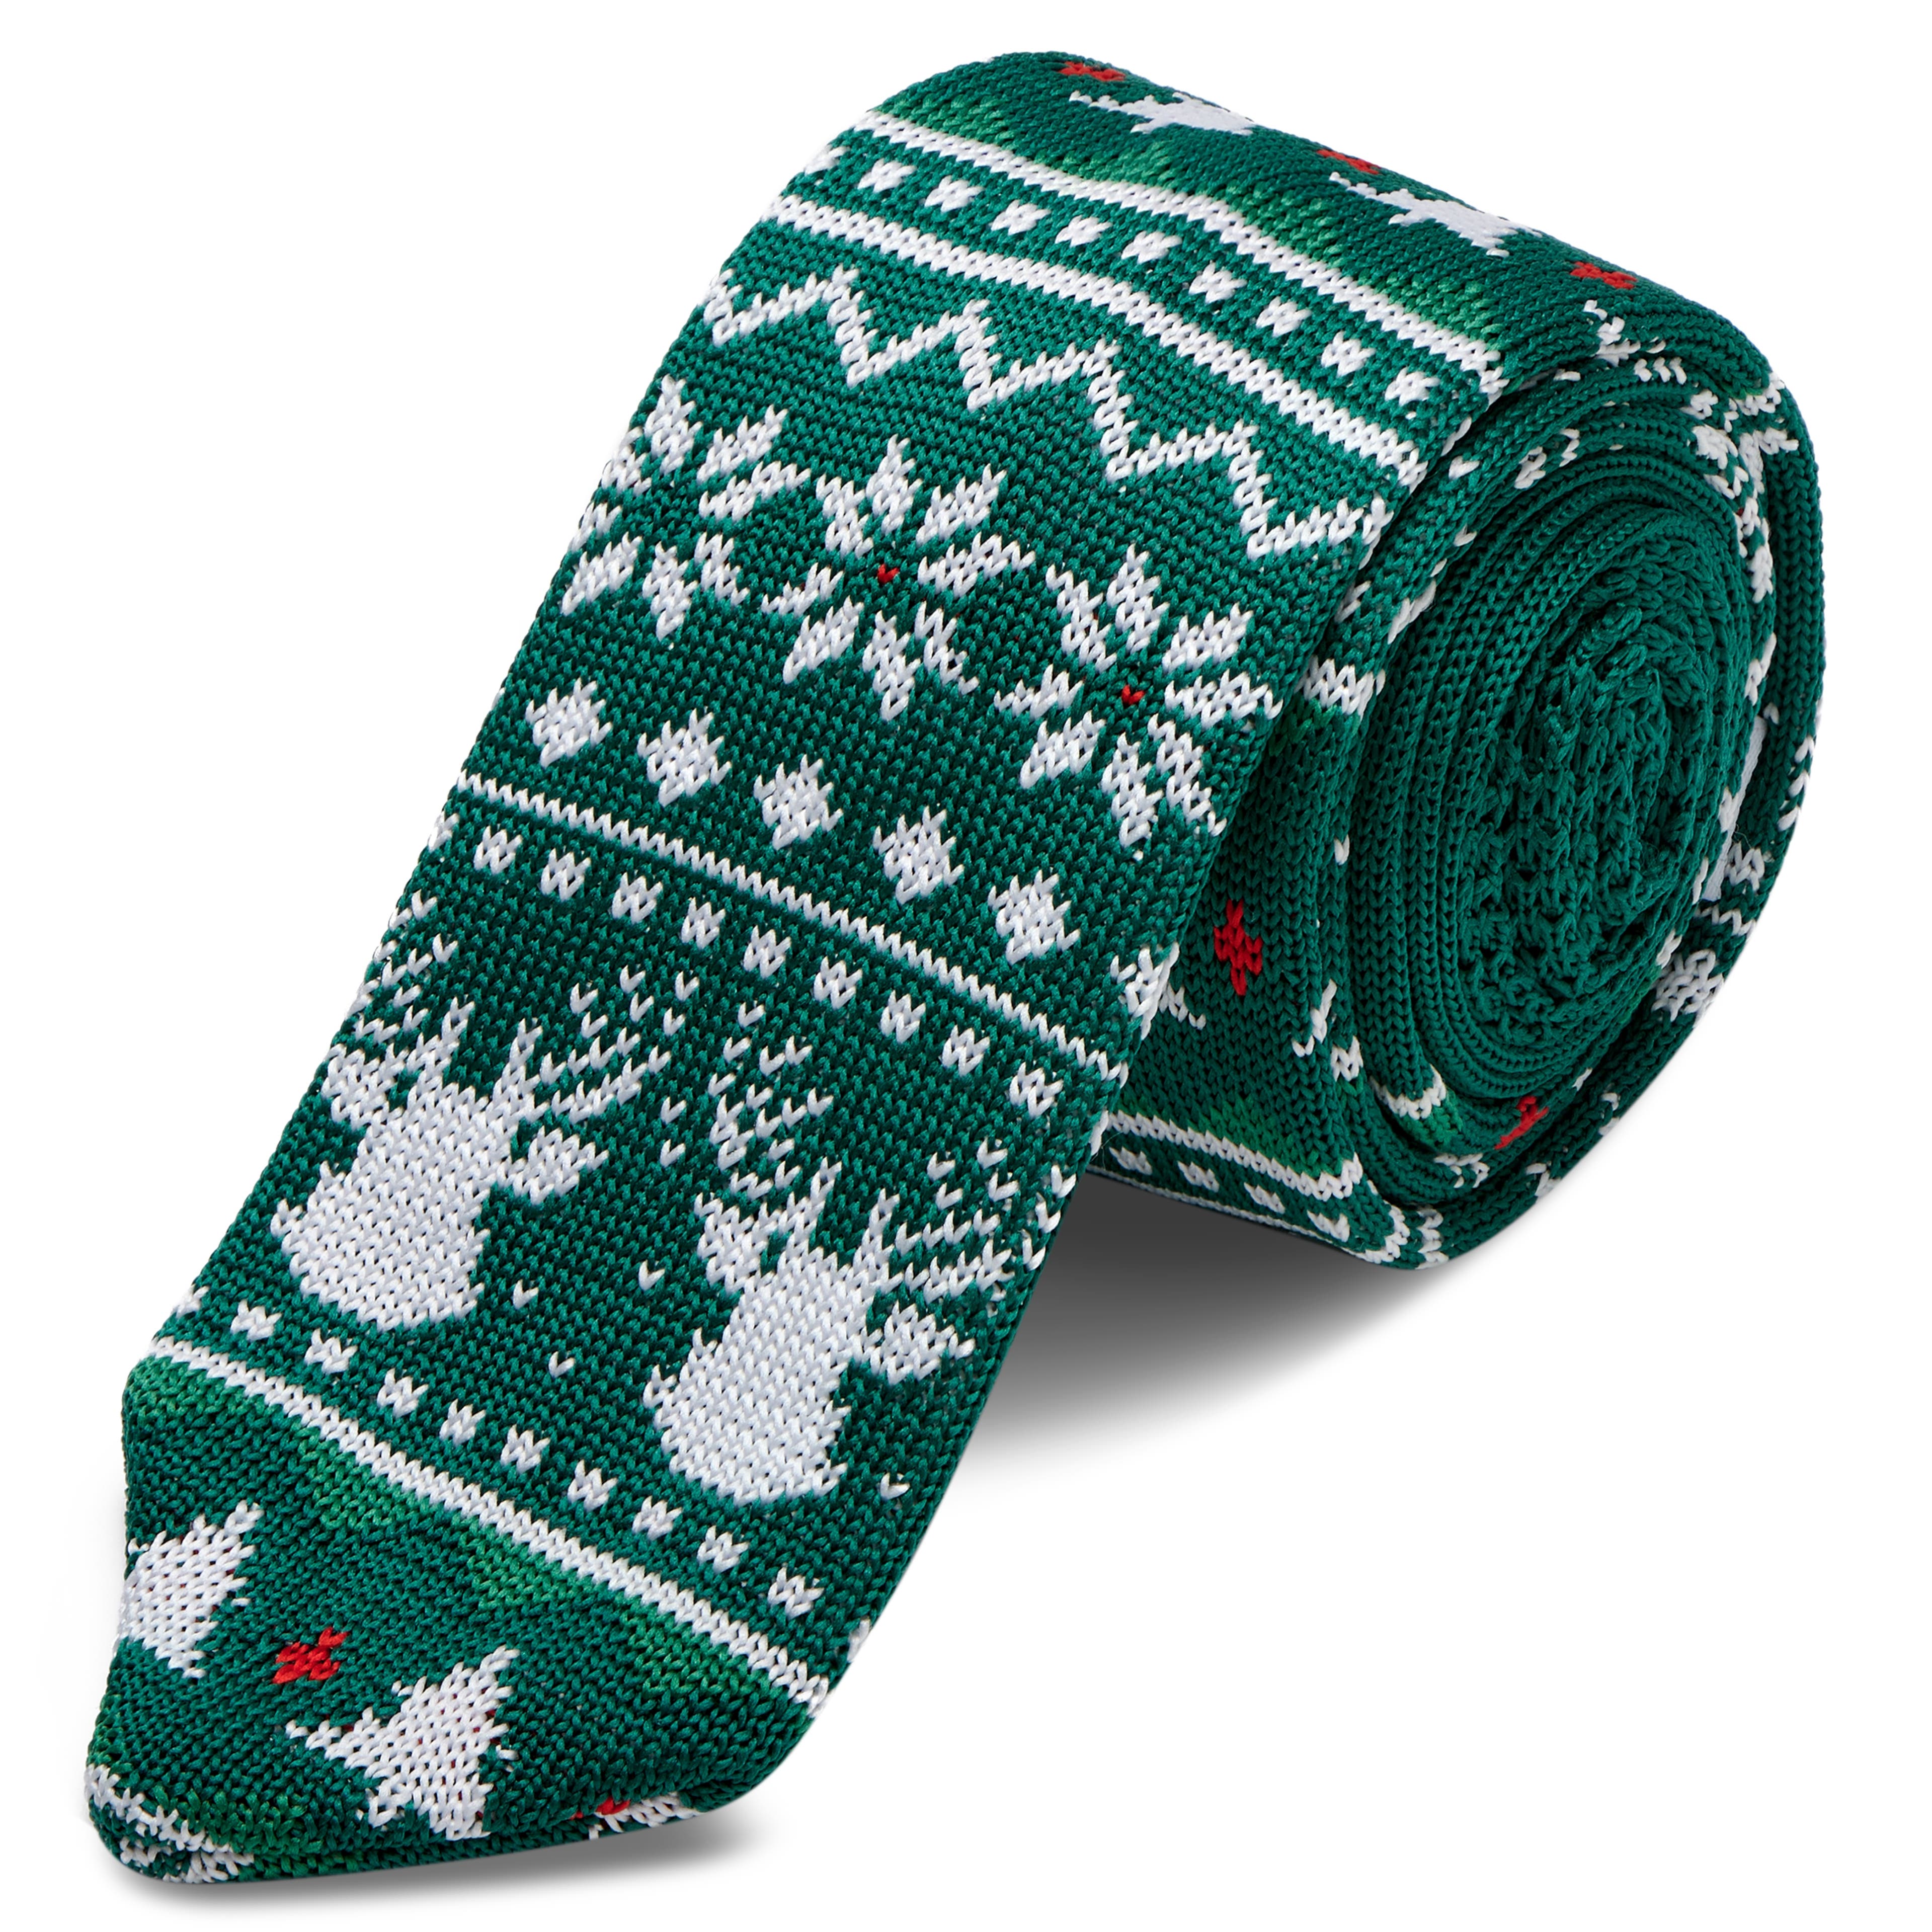 Grüne Strickkrawatte In Weihnachtspullover Design